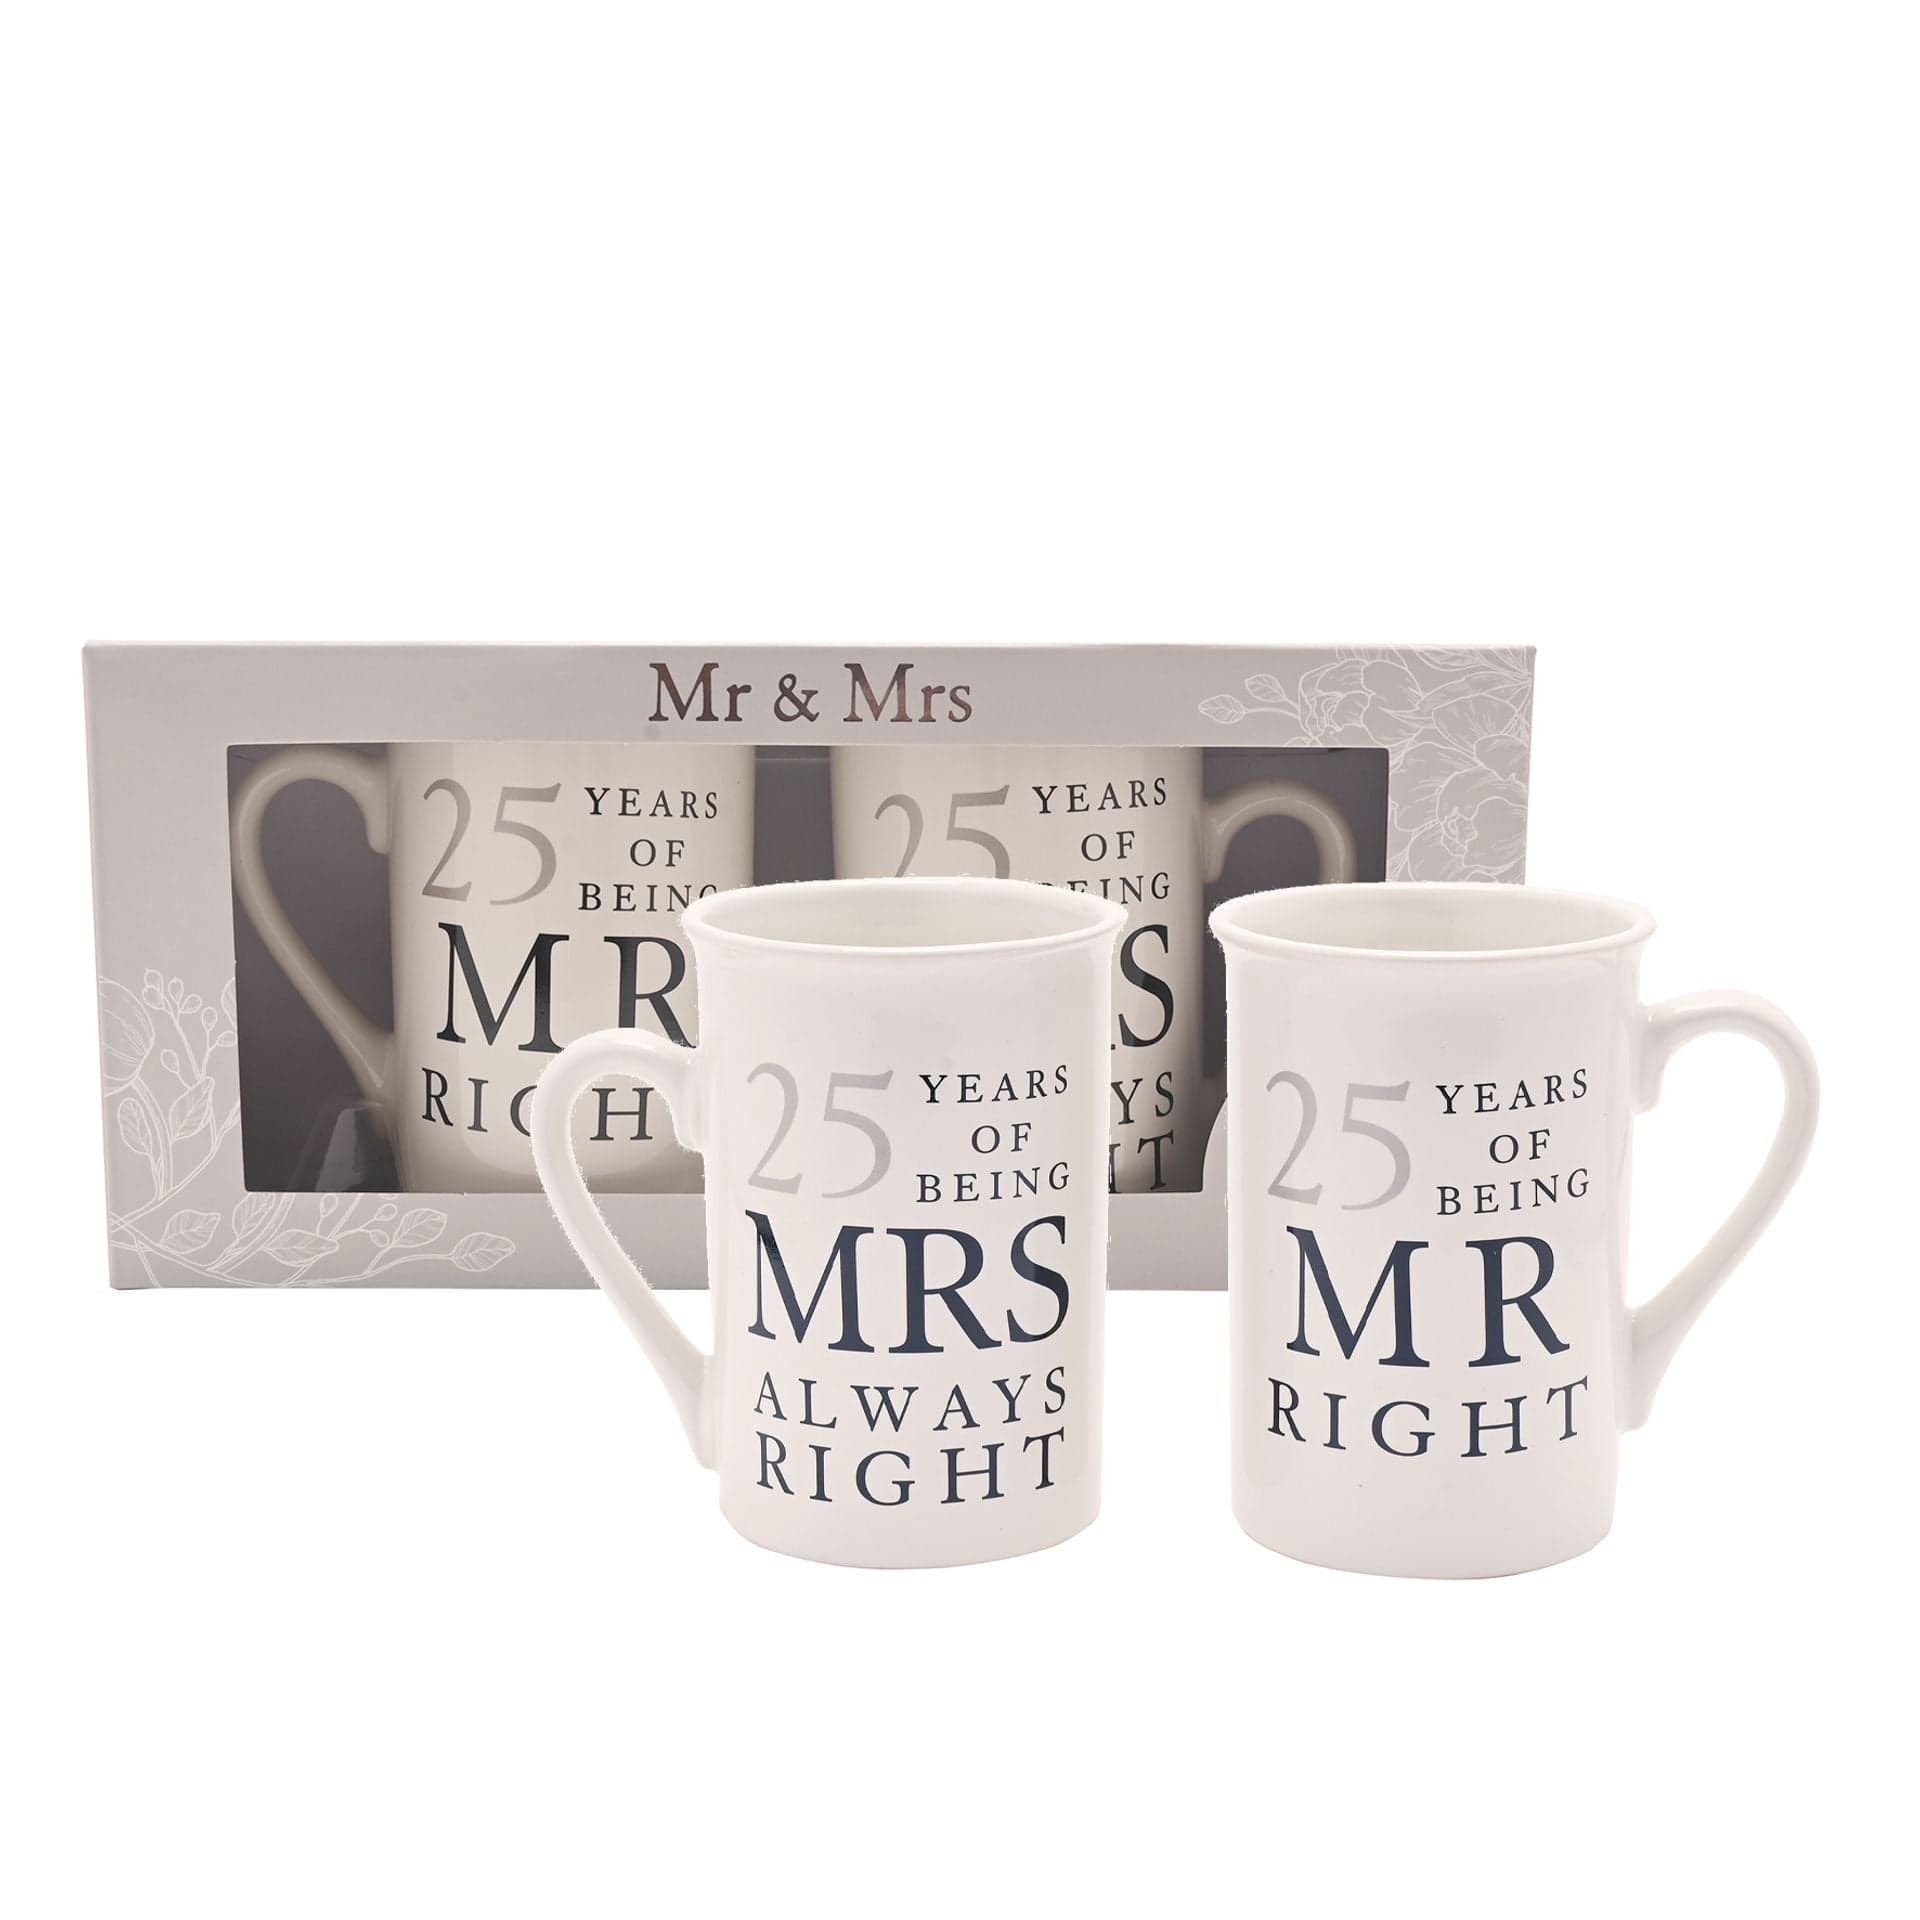 Widdop Mug Amore Mr Right Mrs Always Right Ceramic Mug Gift Set - 25 Years Anniversary